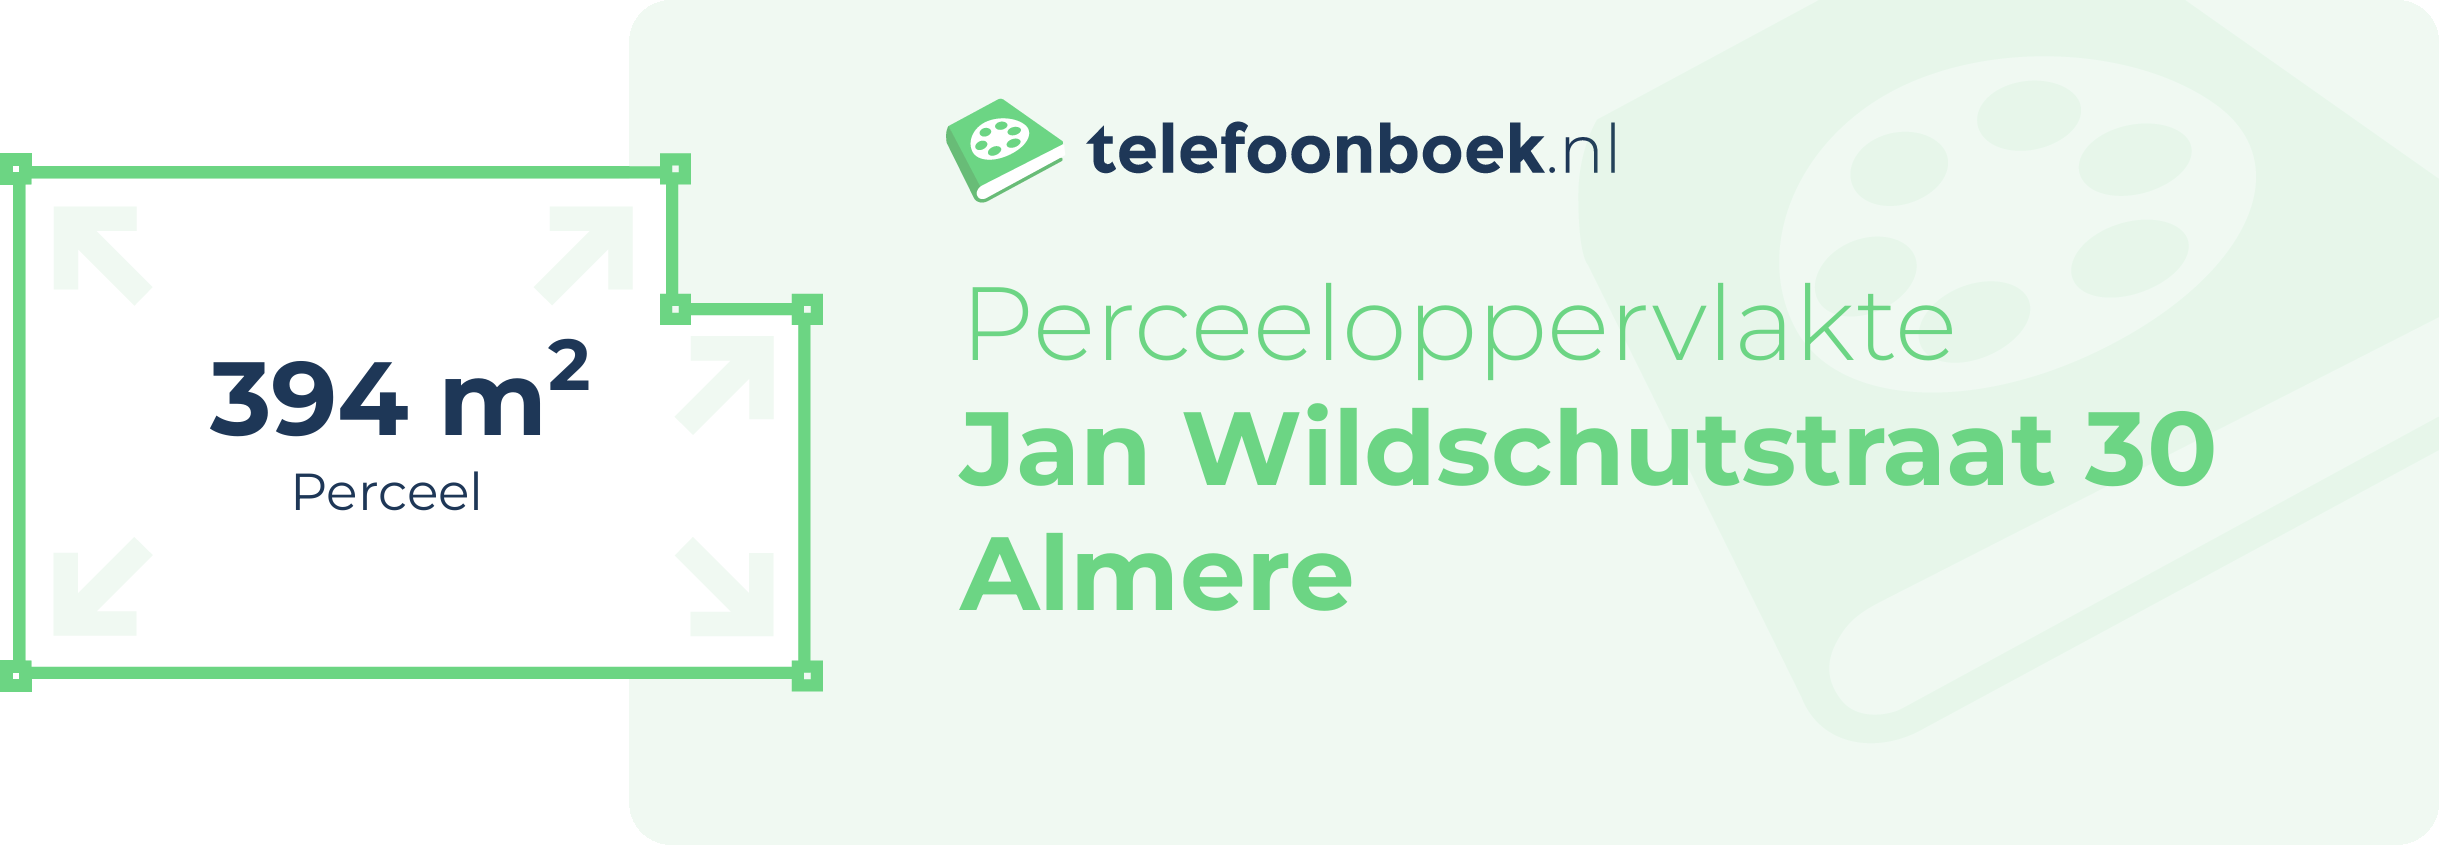 Perceeloppervlakte Jan Wildschutstraat 30 Almere